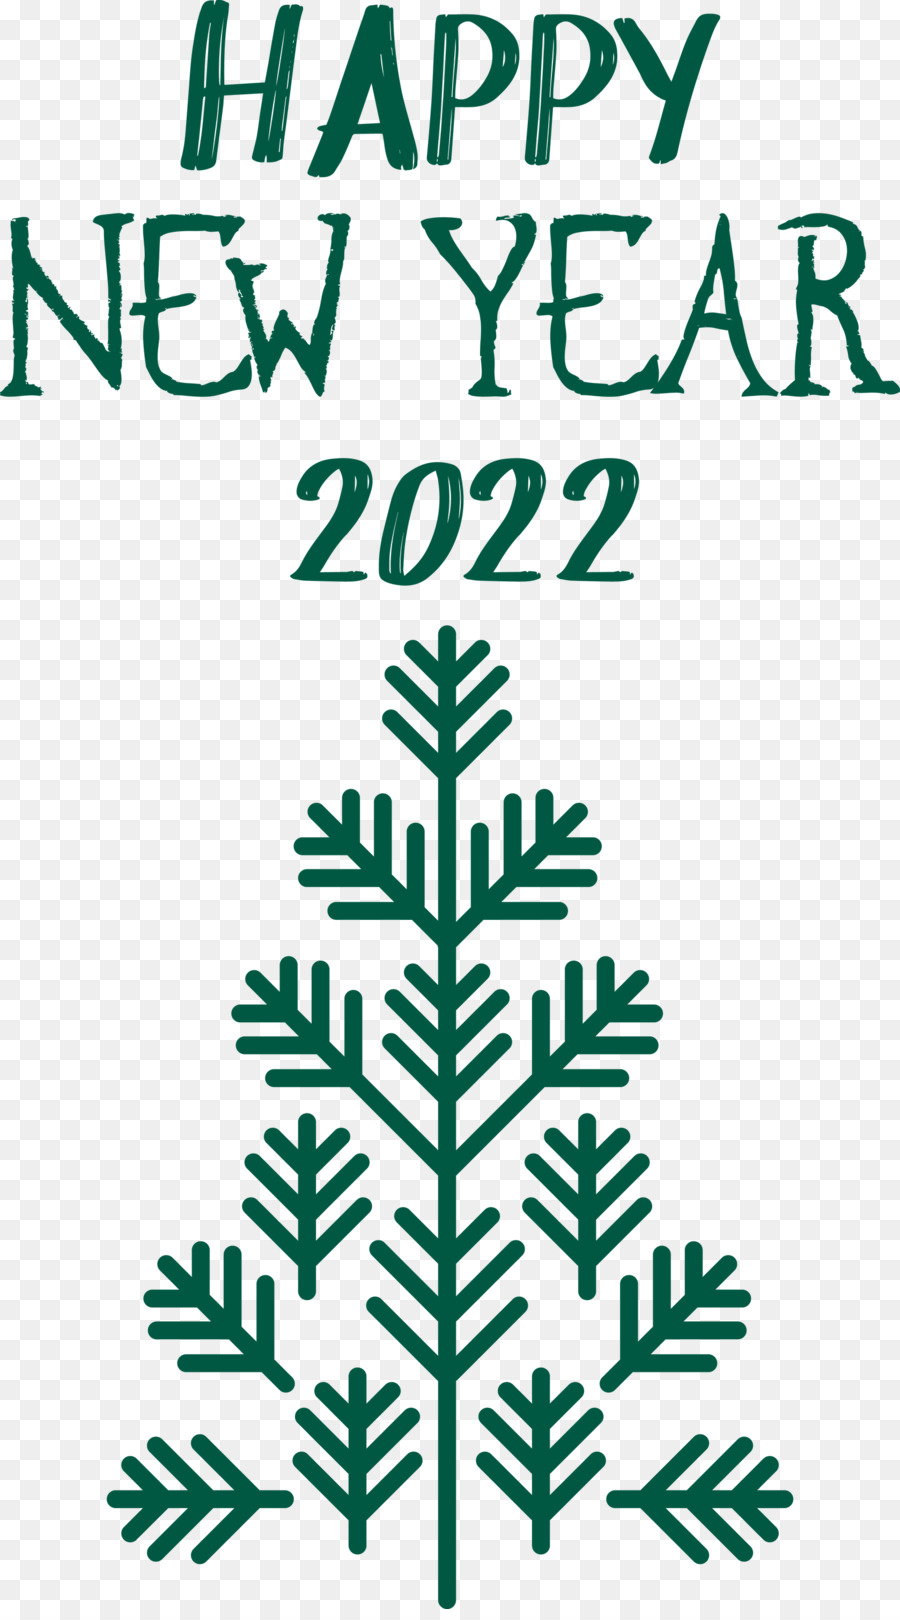 2022 Năm mới Chúc mừng năm mới 2022 - 